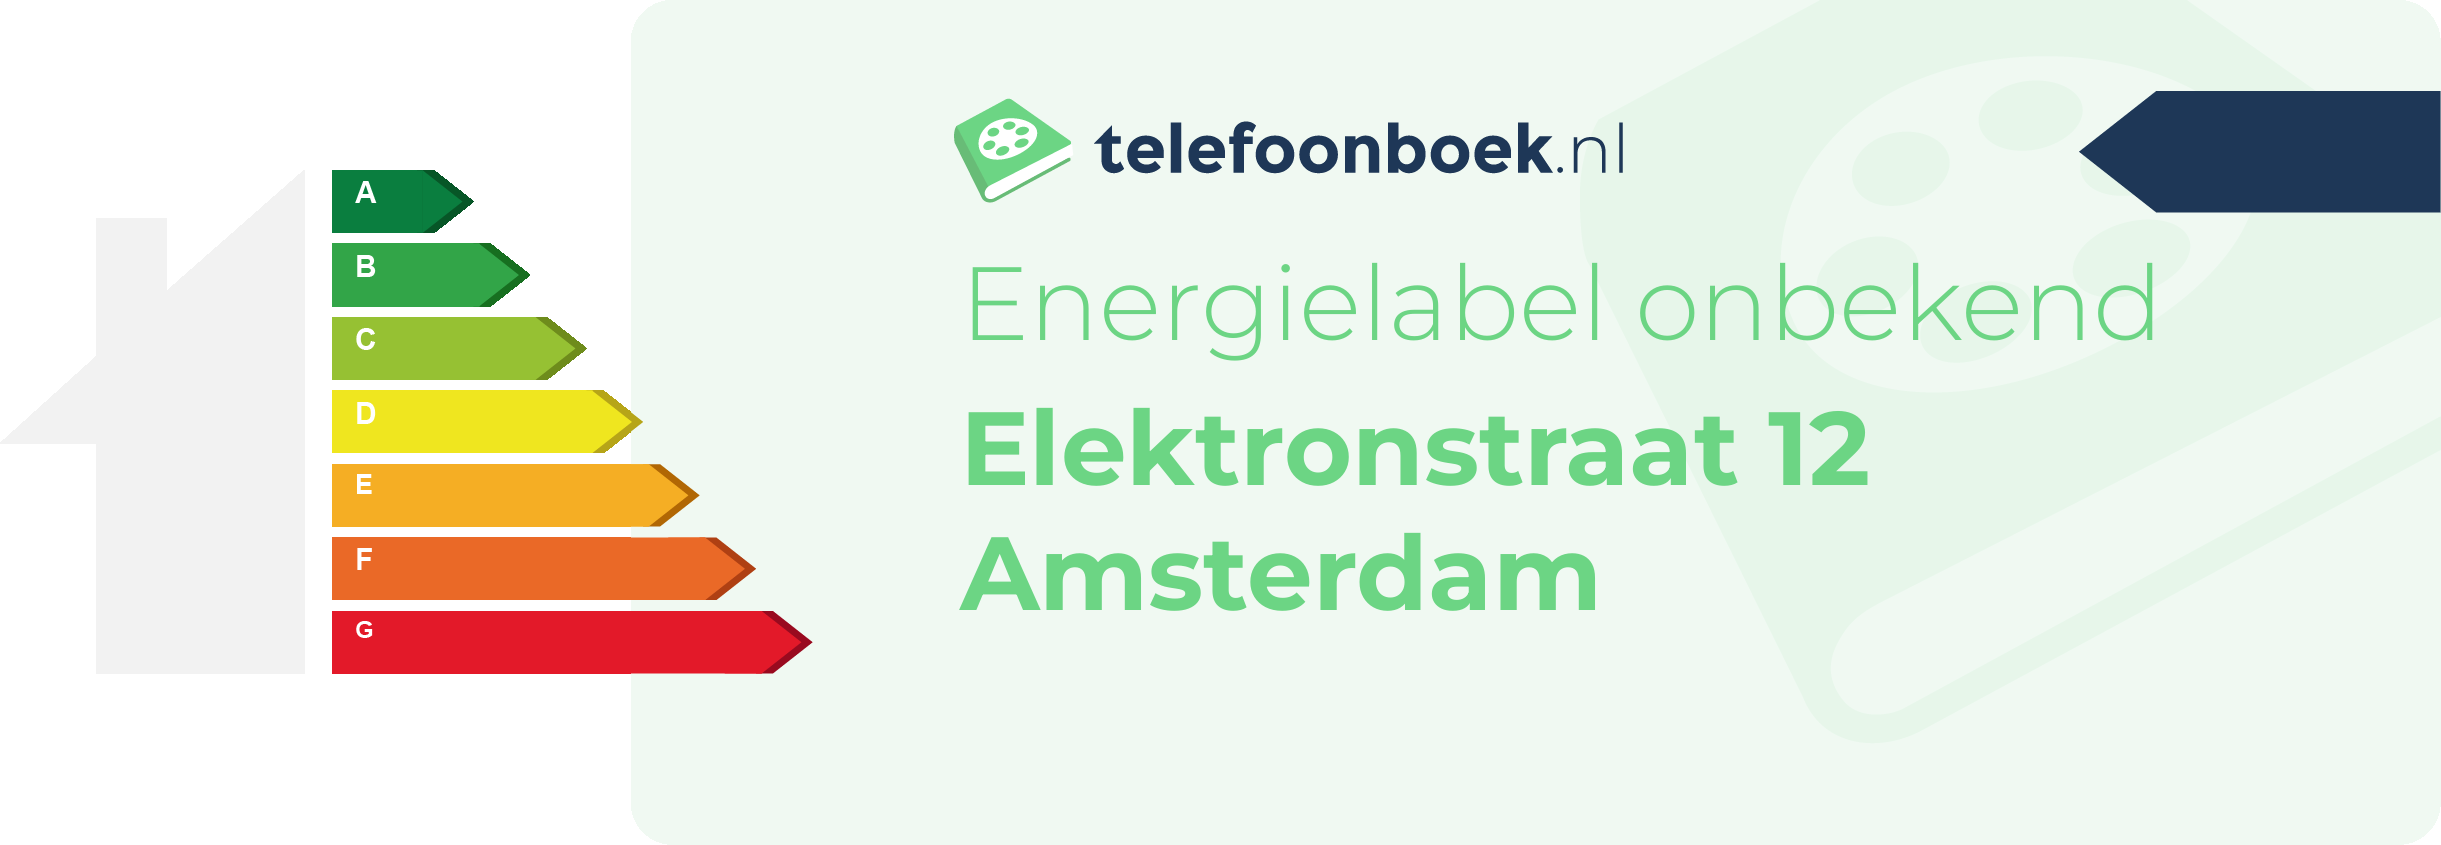 Energielabel Elektronstraat 12 Amsterdam